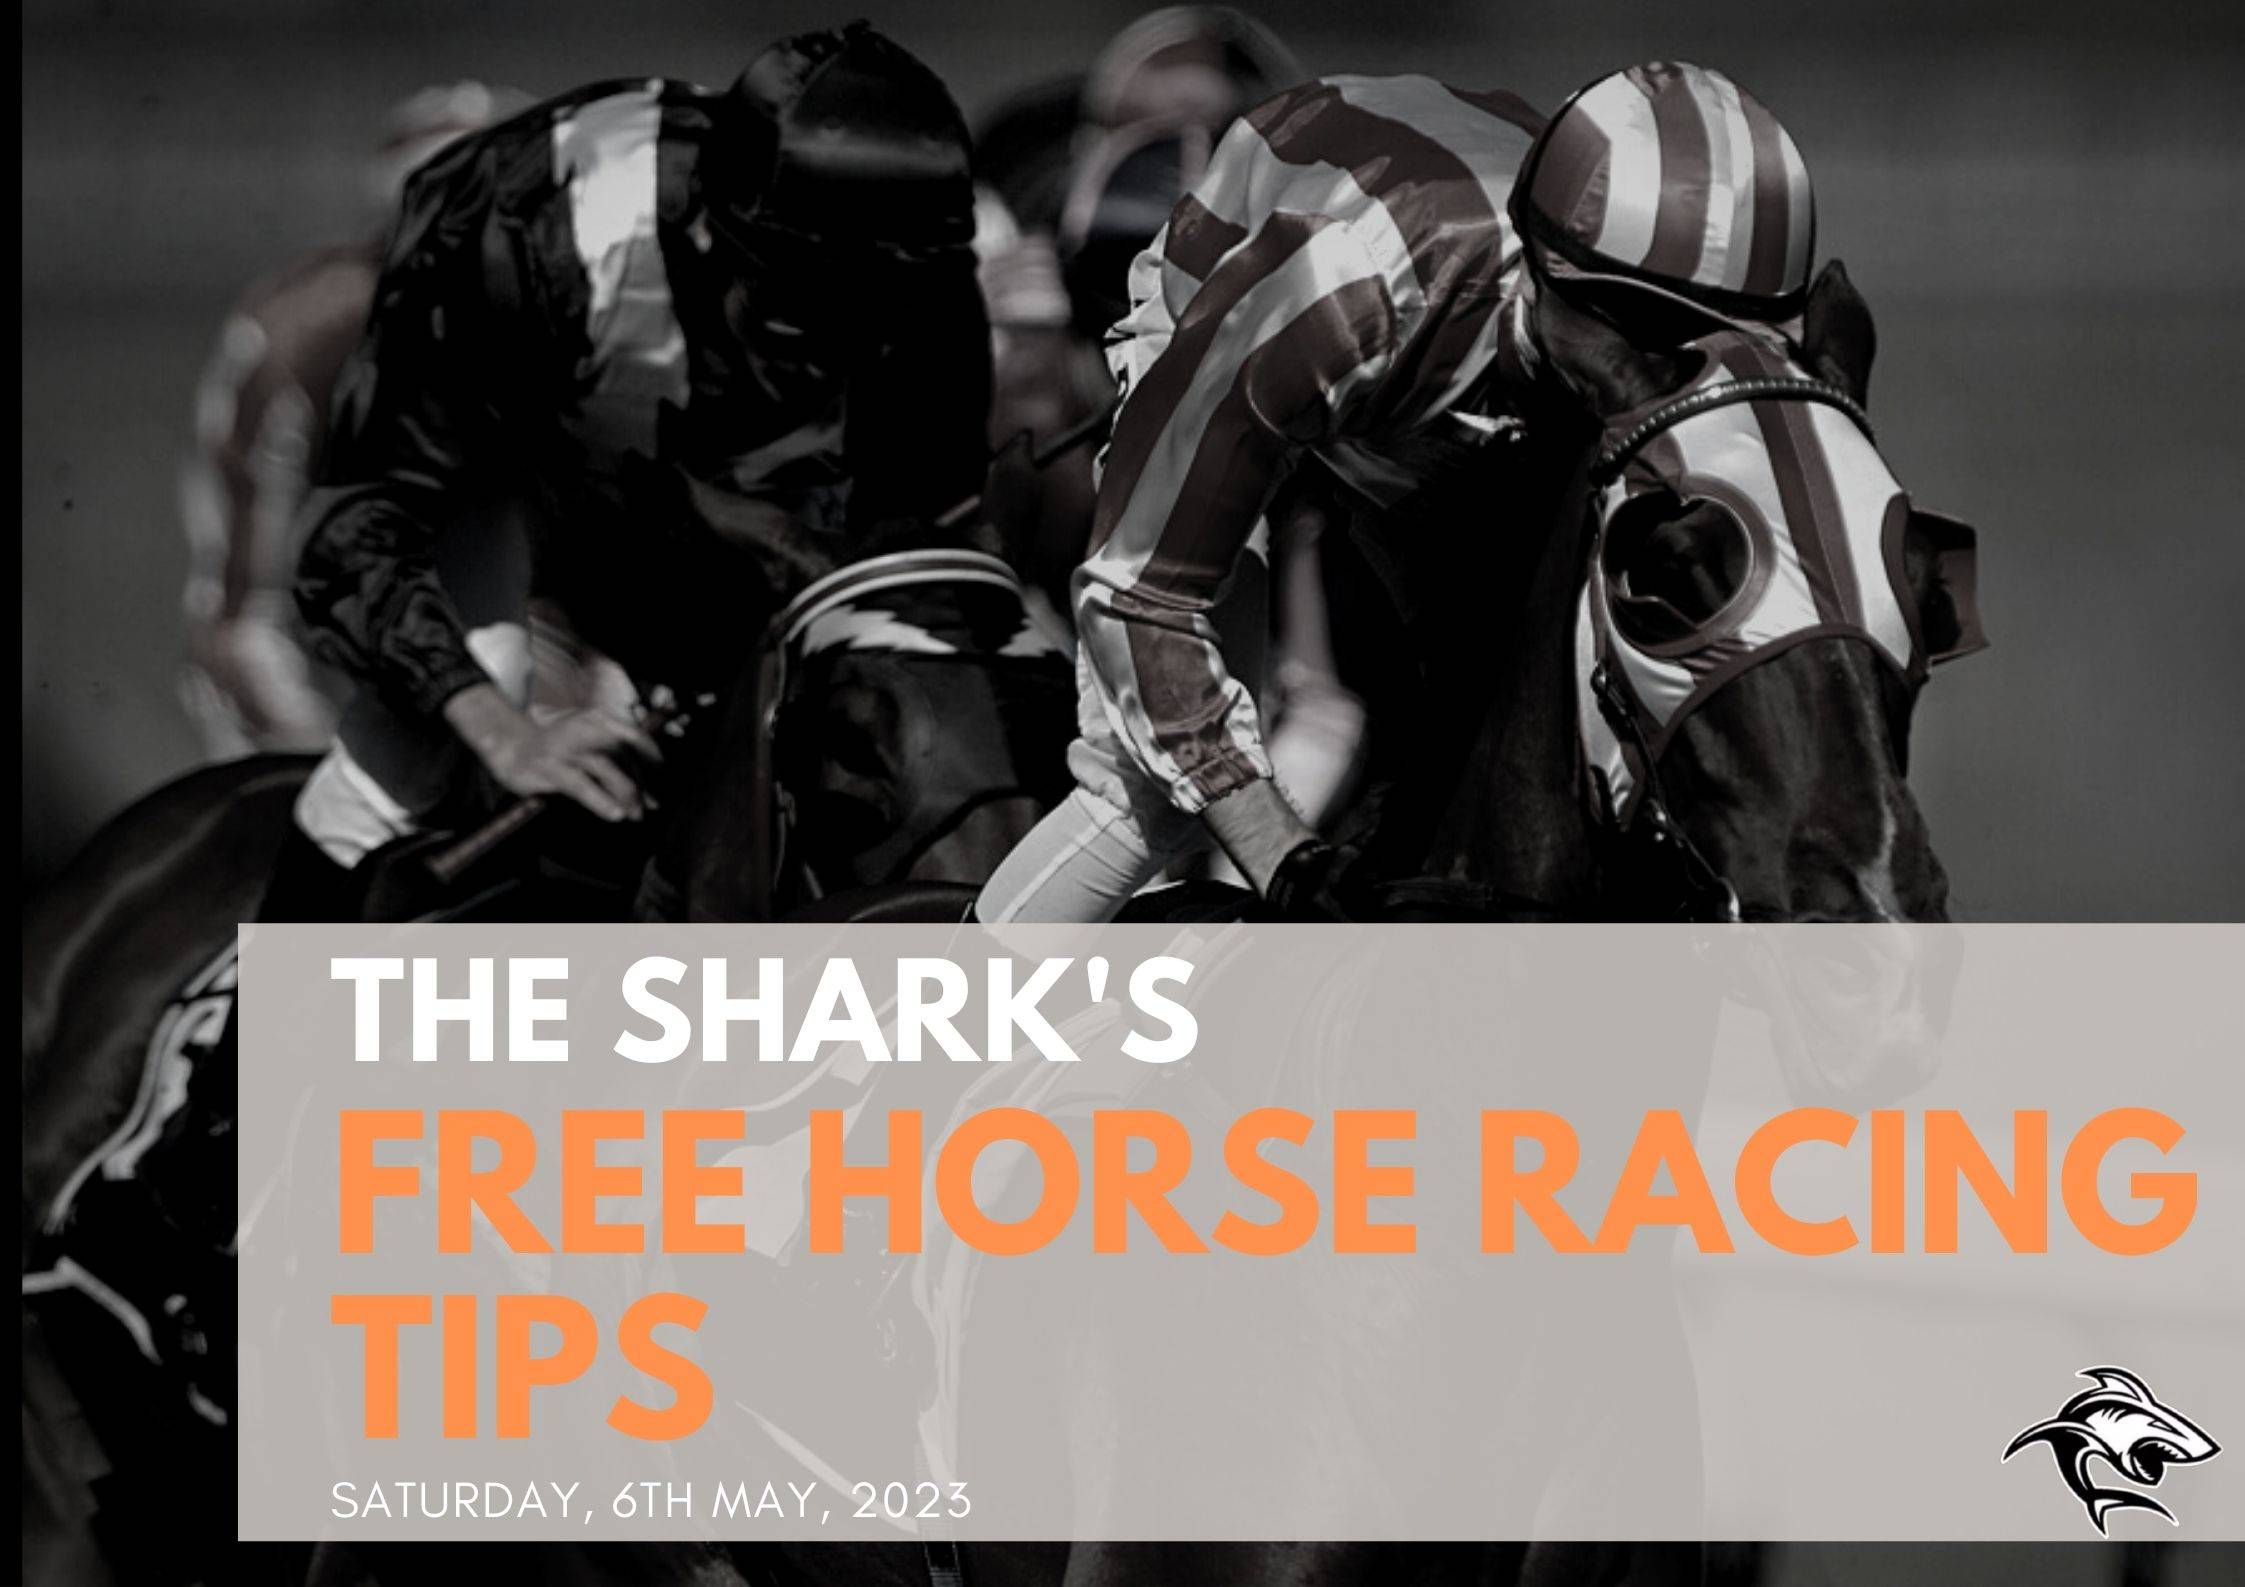 Free Horse Racing Tips - 6th May